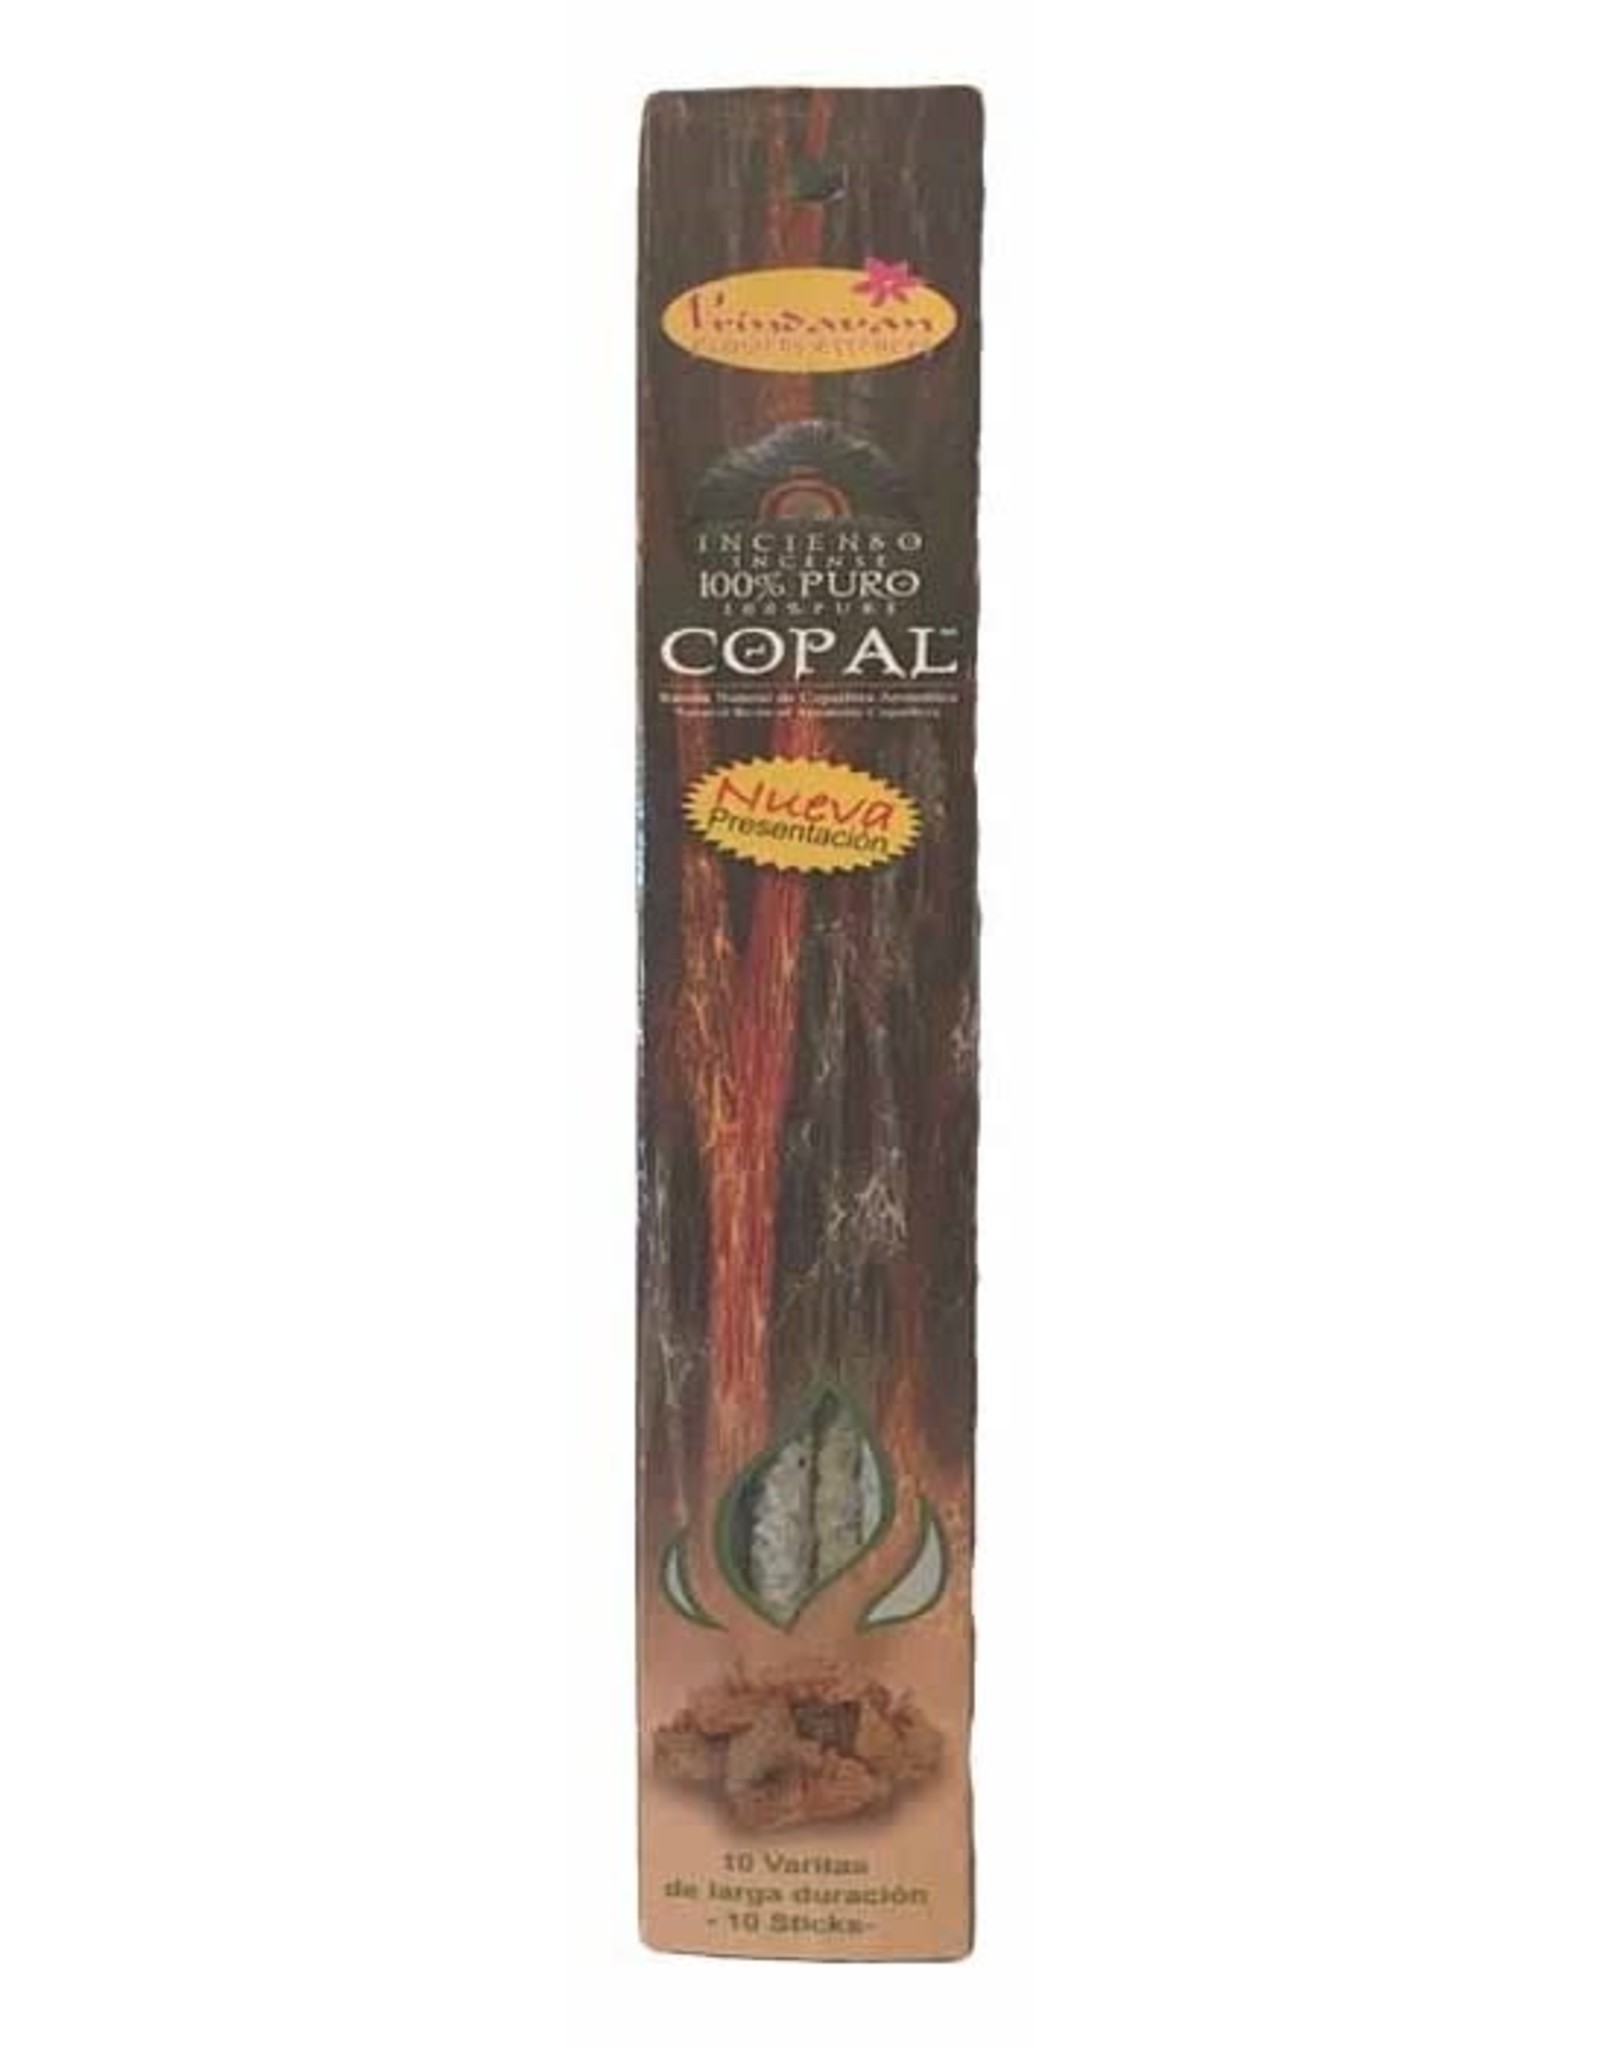 100% Pure Copal Stick Incense - 10 Sticks